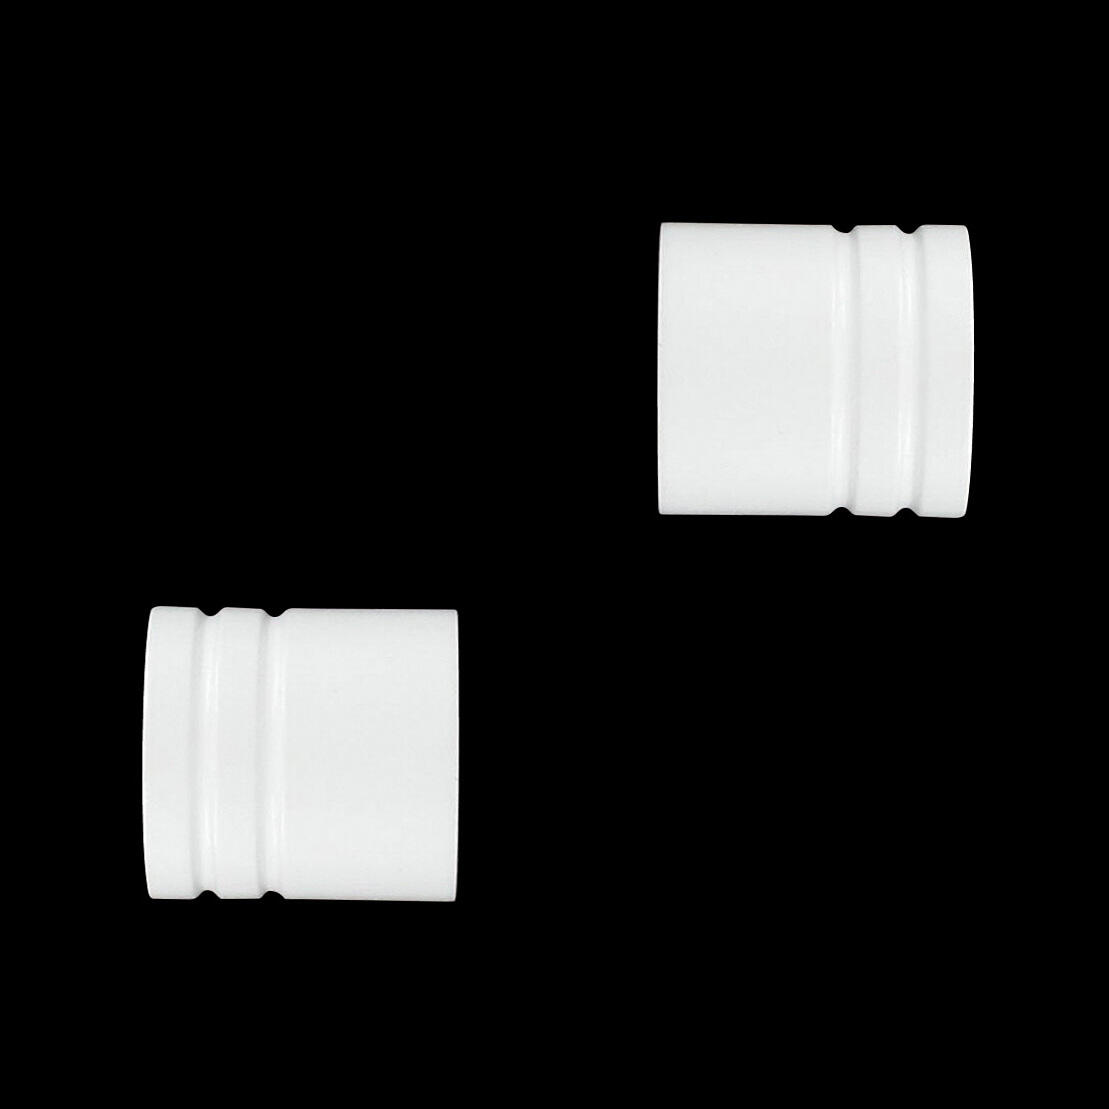 Lote de 2 conteras para barra de madera (D28 mm) Bouchon Blanco 1